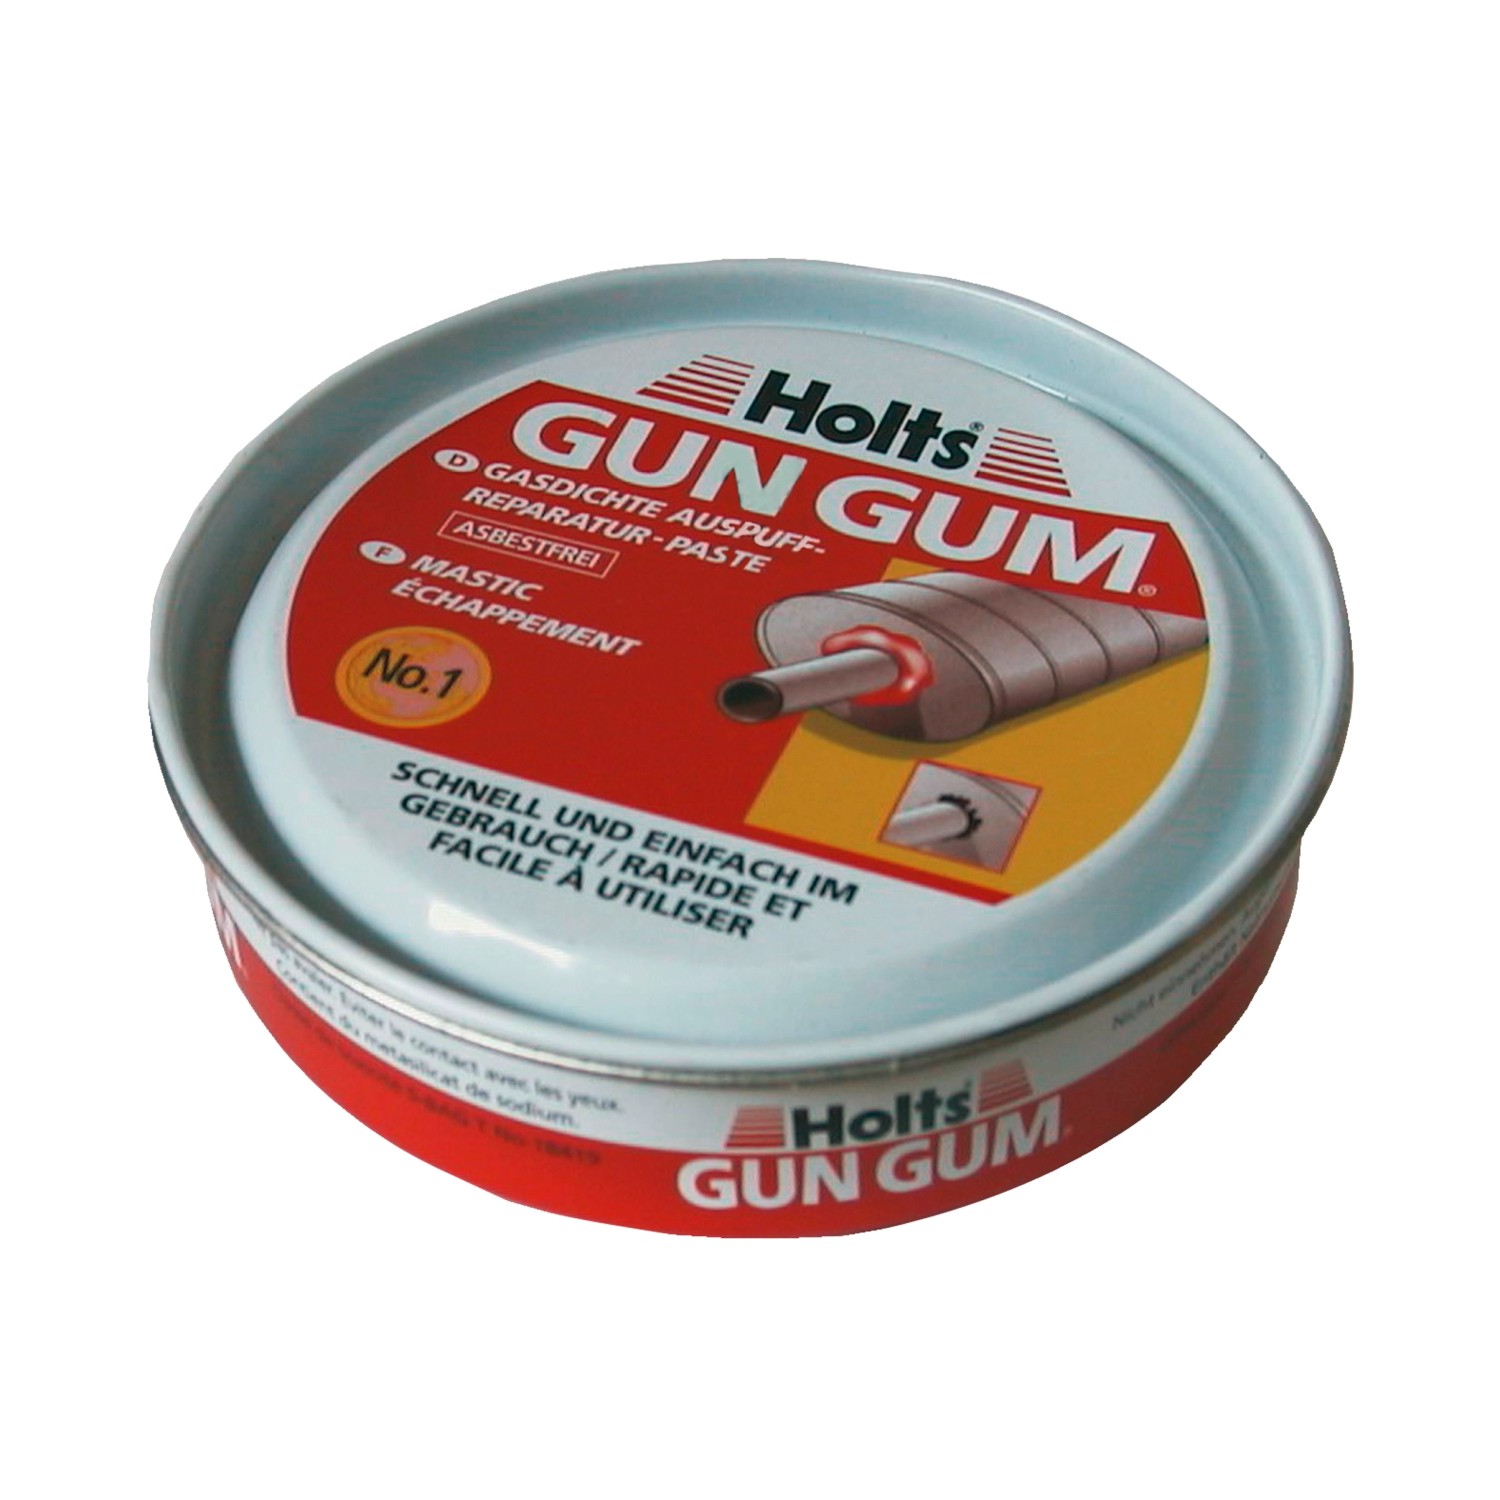 Holts Gun Gum Paste für Auspuffanlagen 200 g kaufen bei OBI